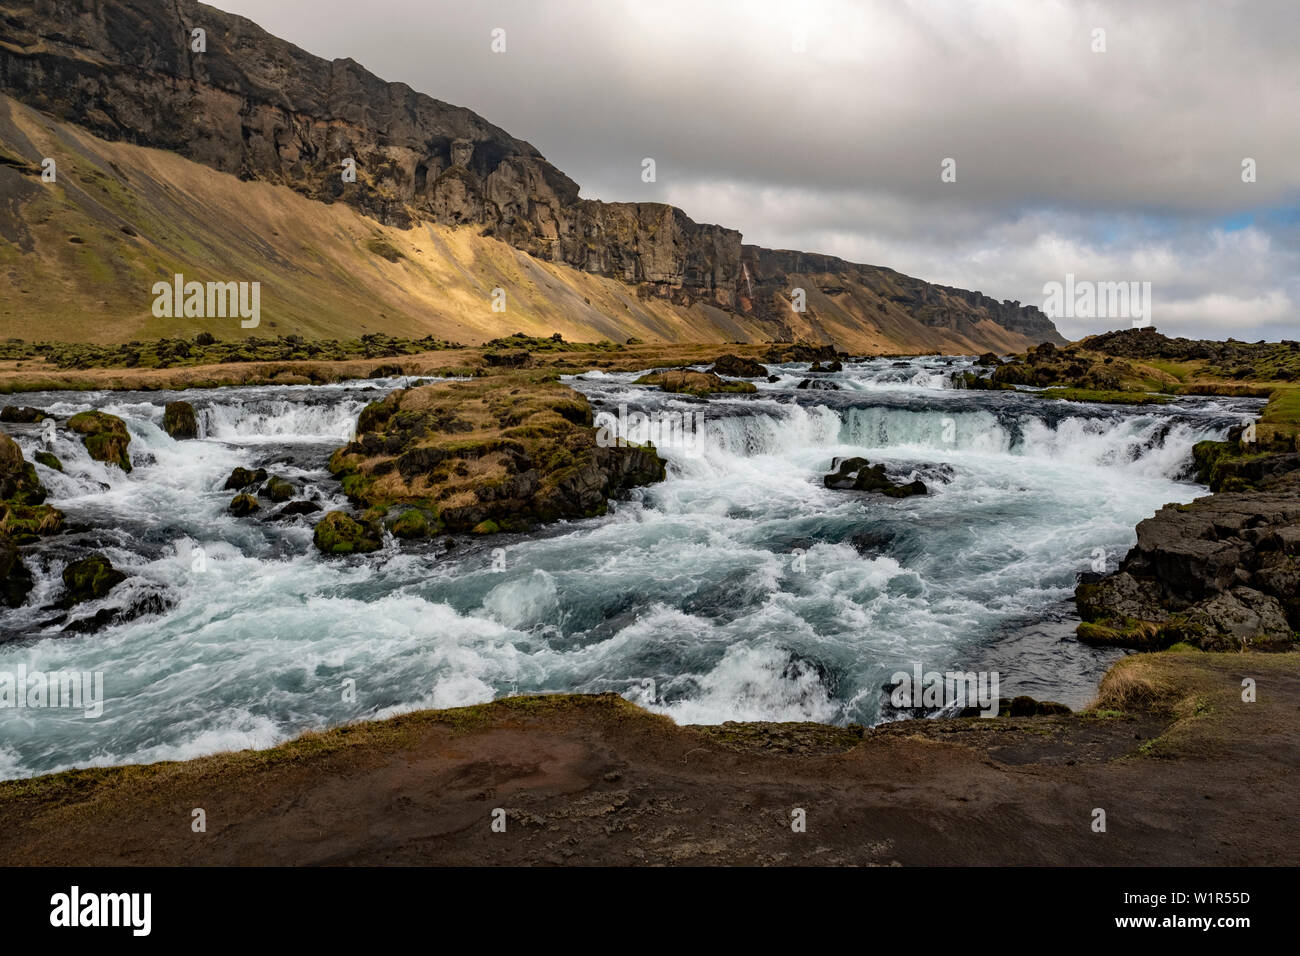 Infuriano river, cascate e aspro paesaggio sulla costa sud-orientale dell'Islanda nella tarda primavera. Foto Stock